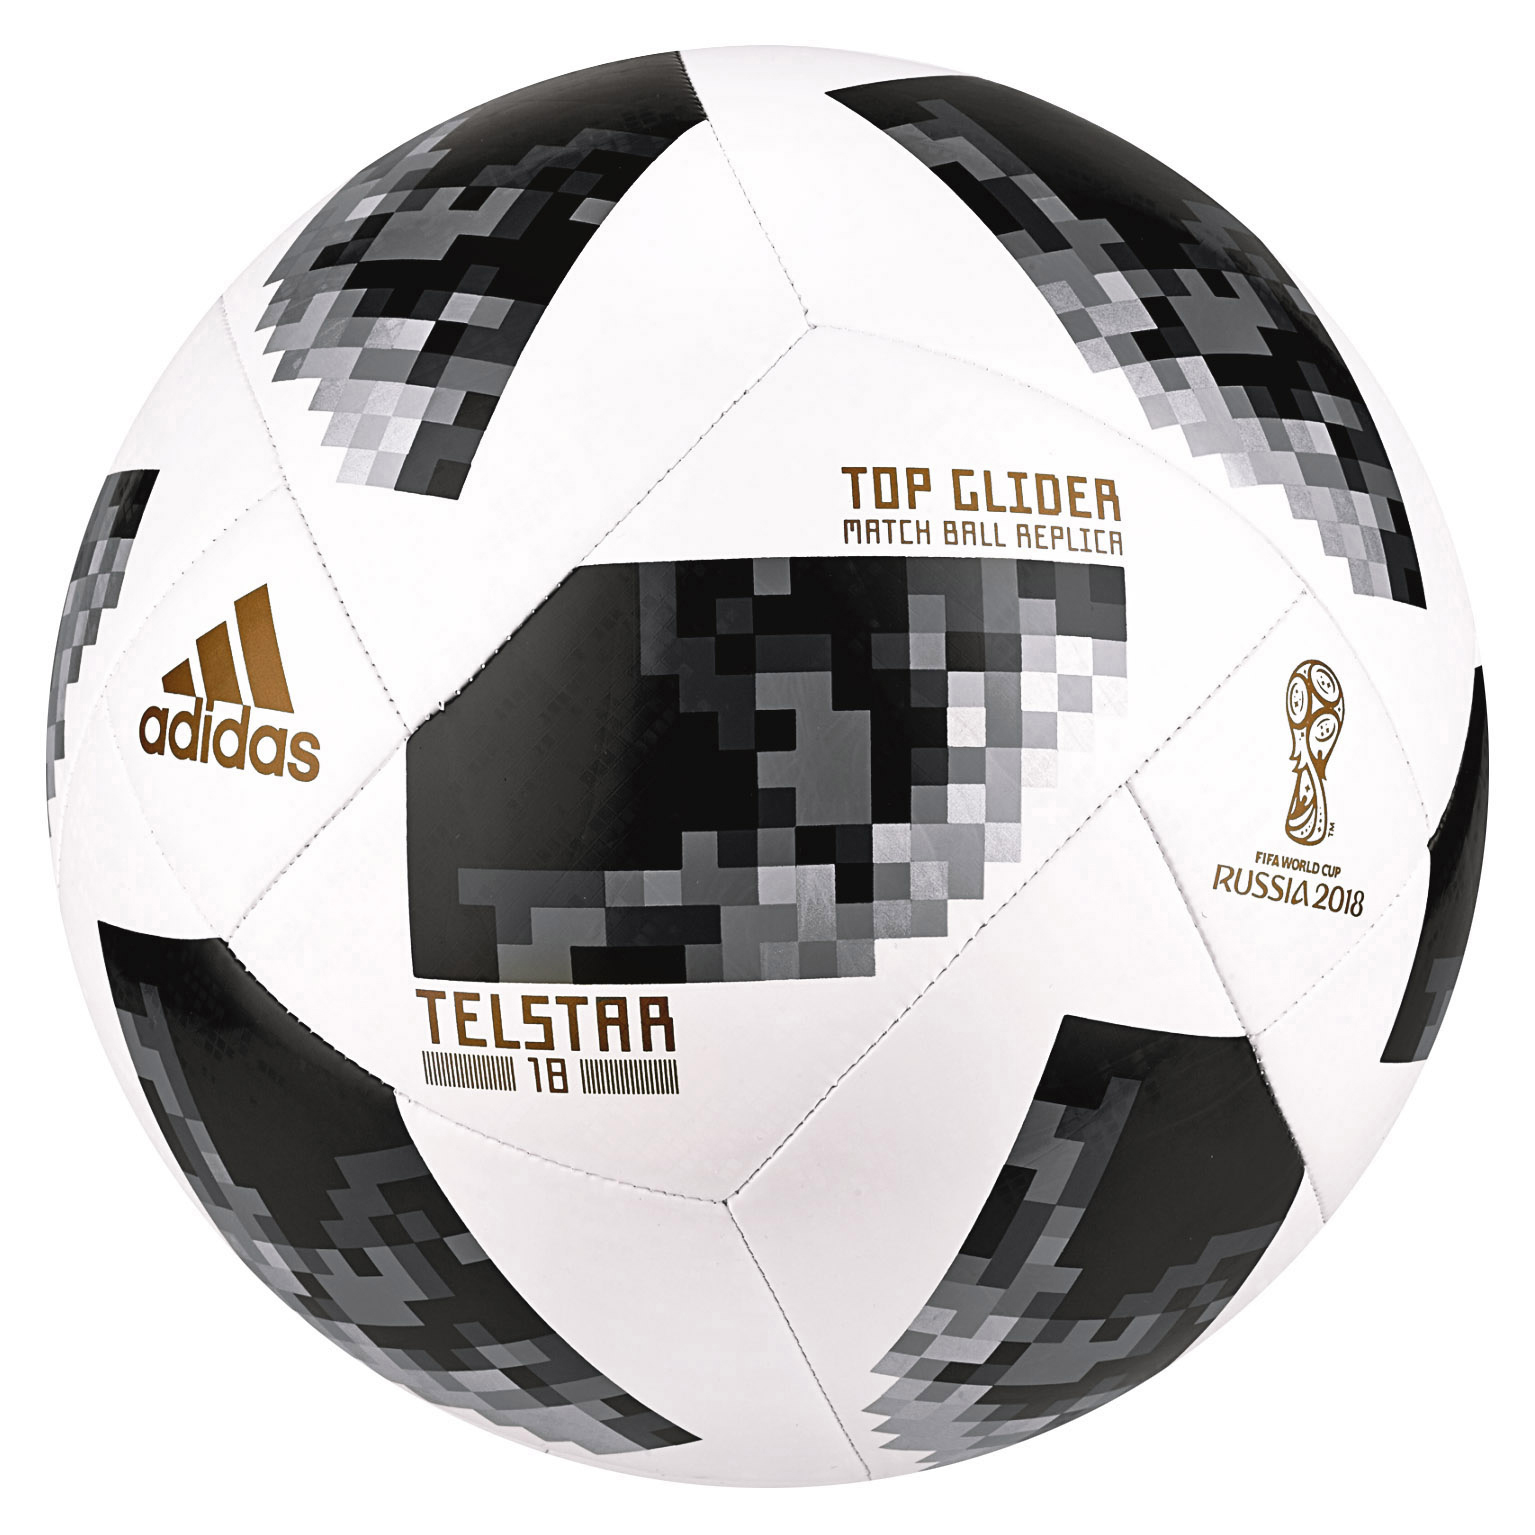 Telstar18 XTREM TOYS Weiß/Schwarz/Silber-Goldfarben Ball, Glider Top Adidas